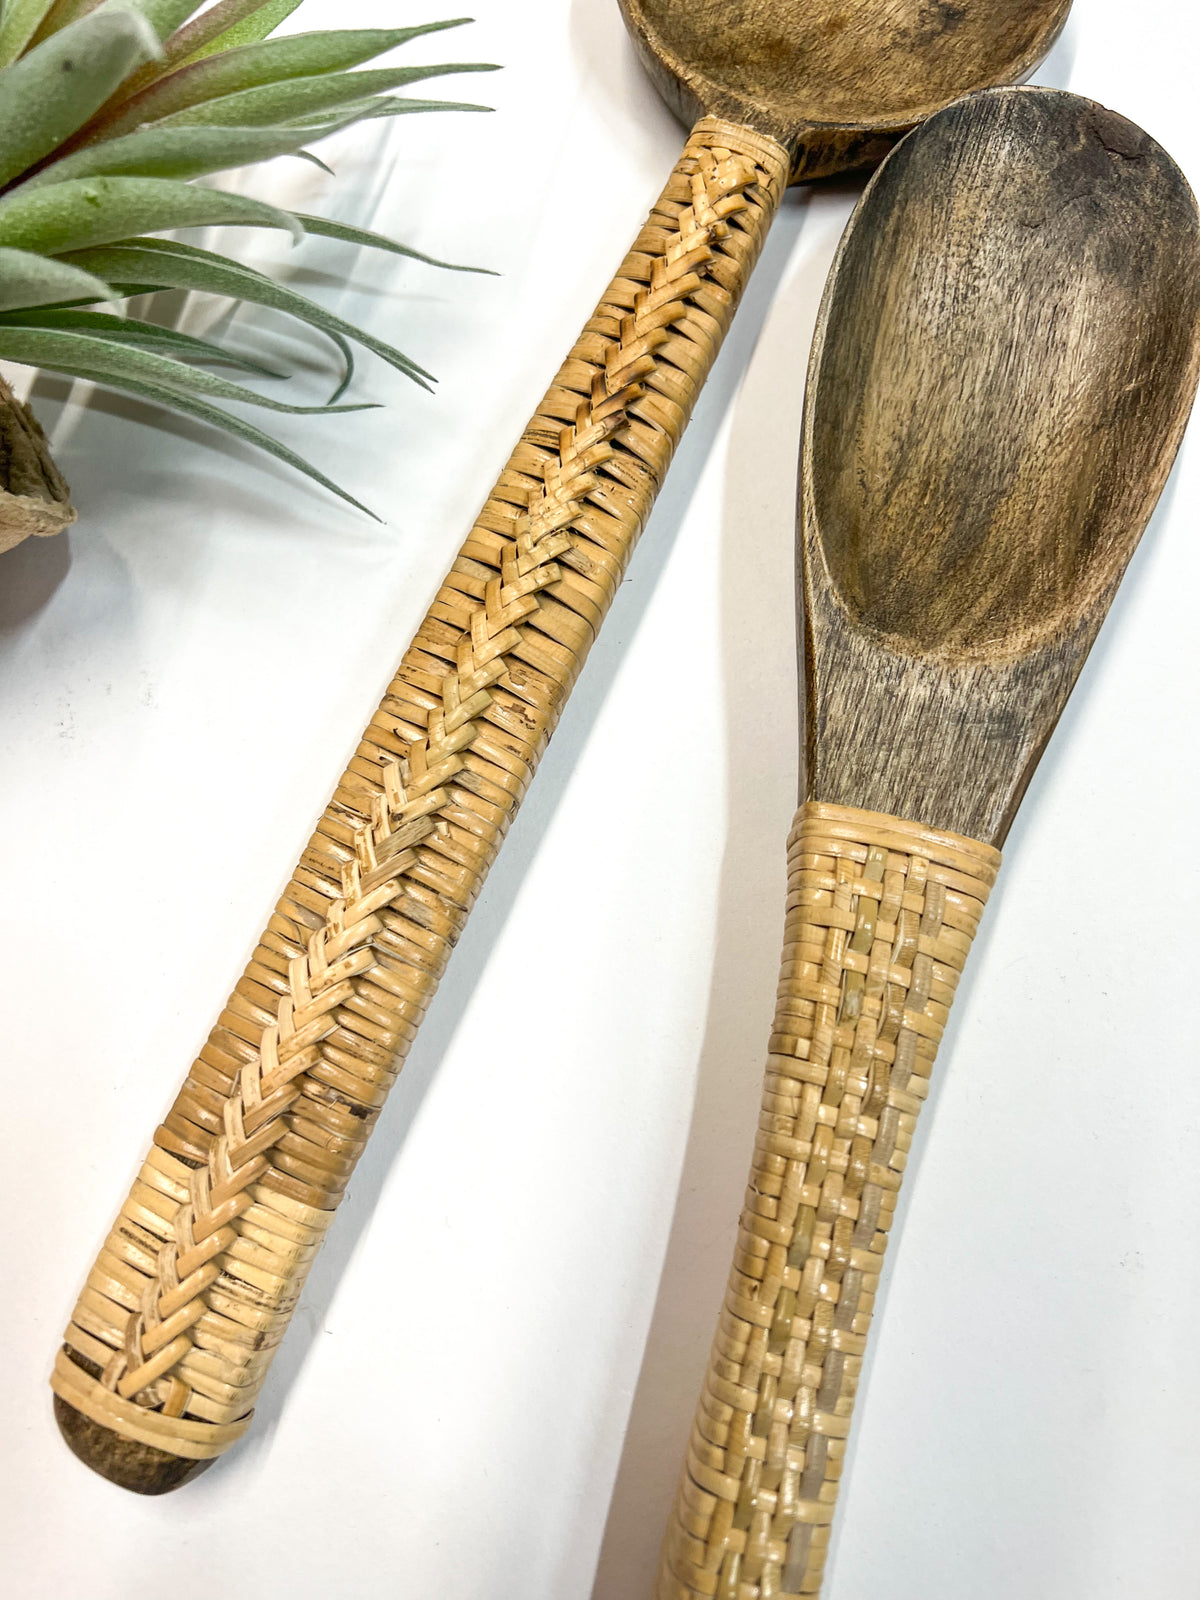 Woven Handle Wood Spoon